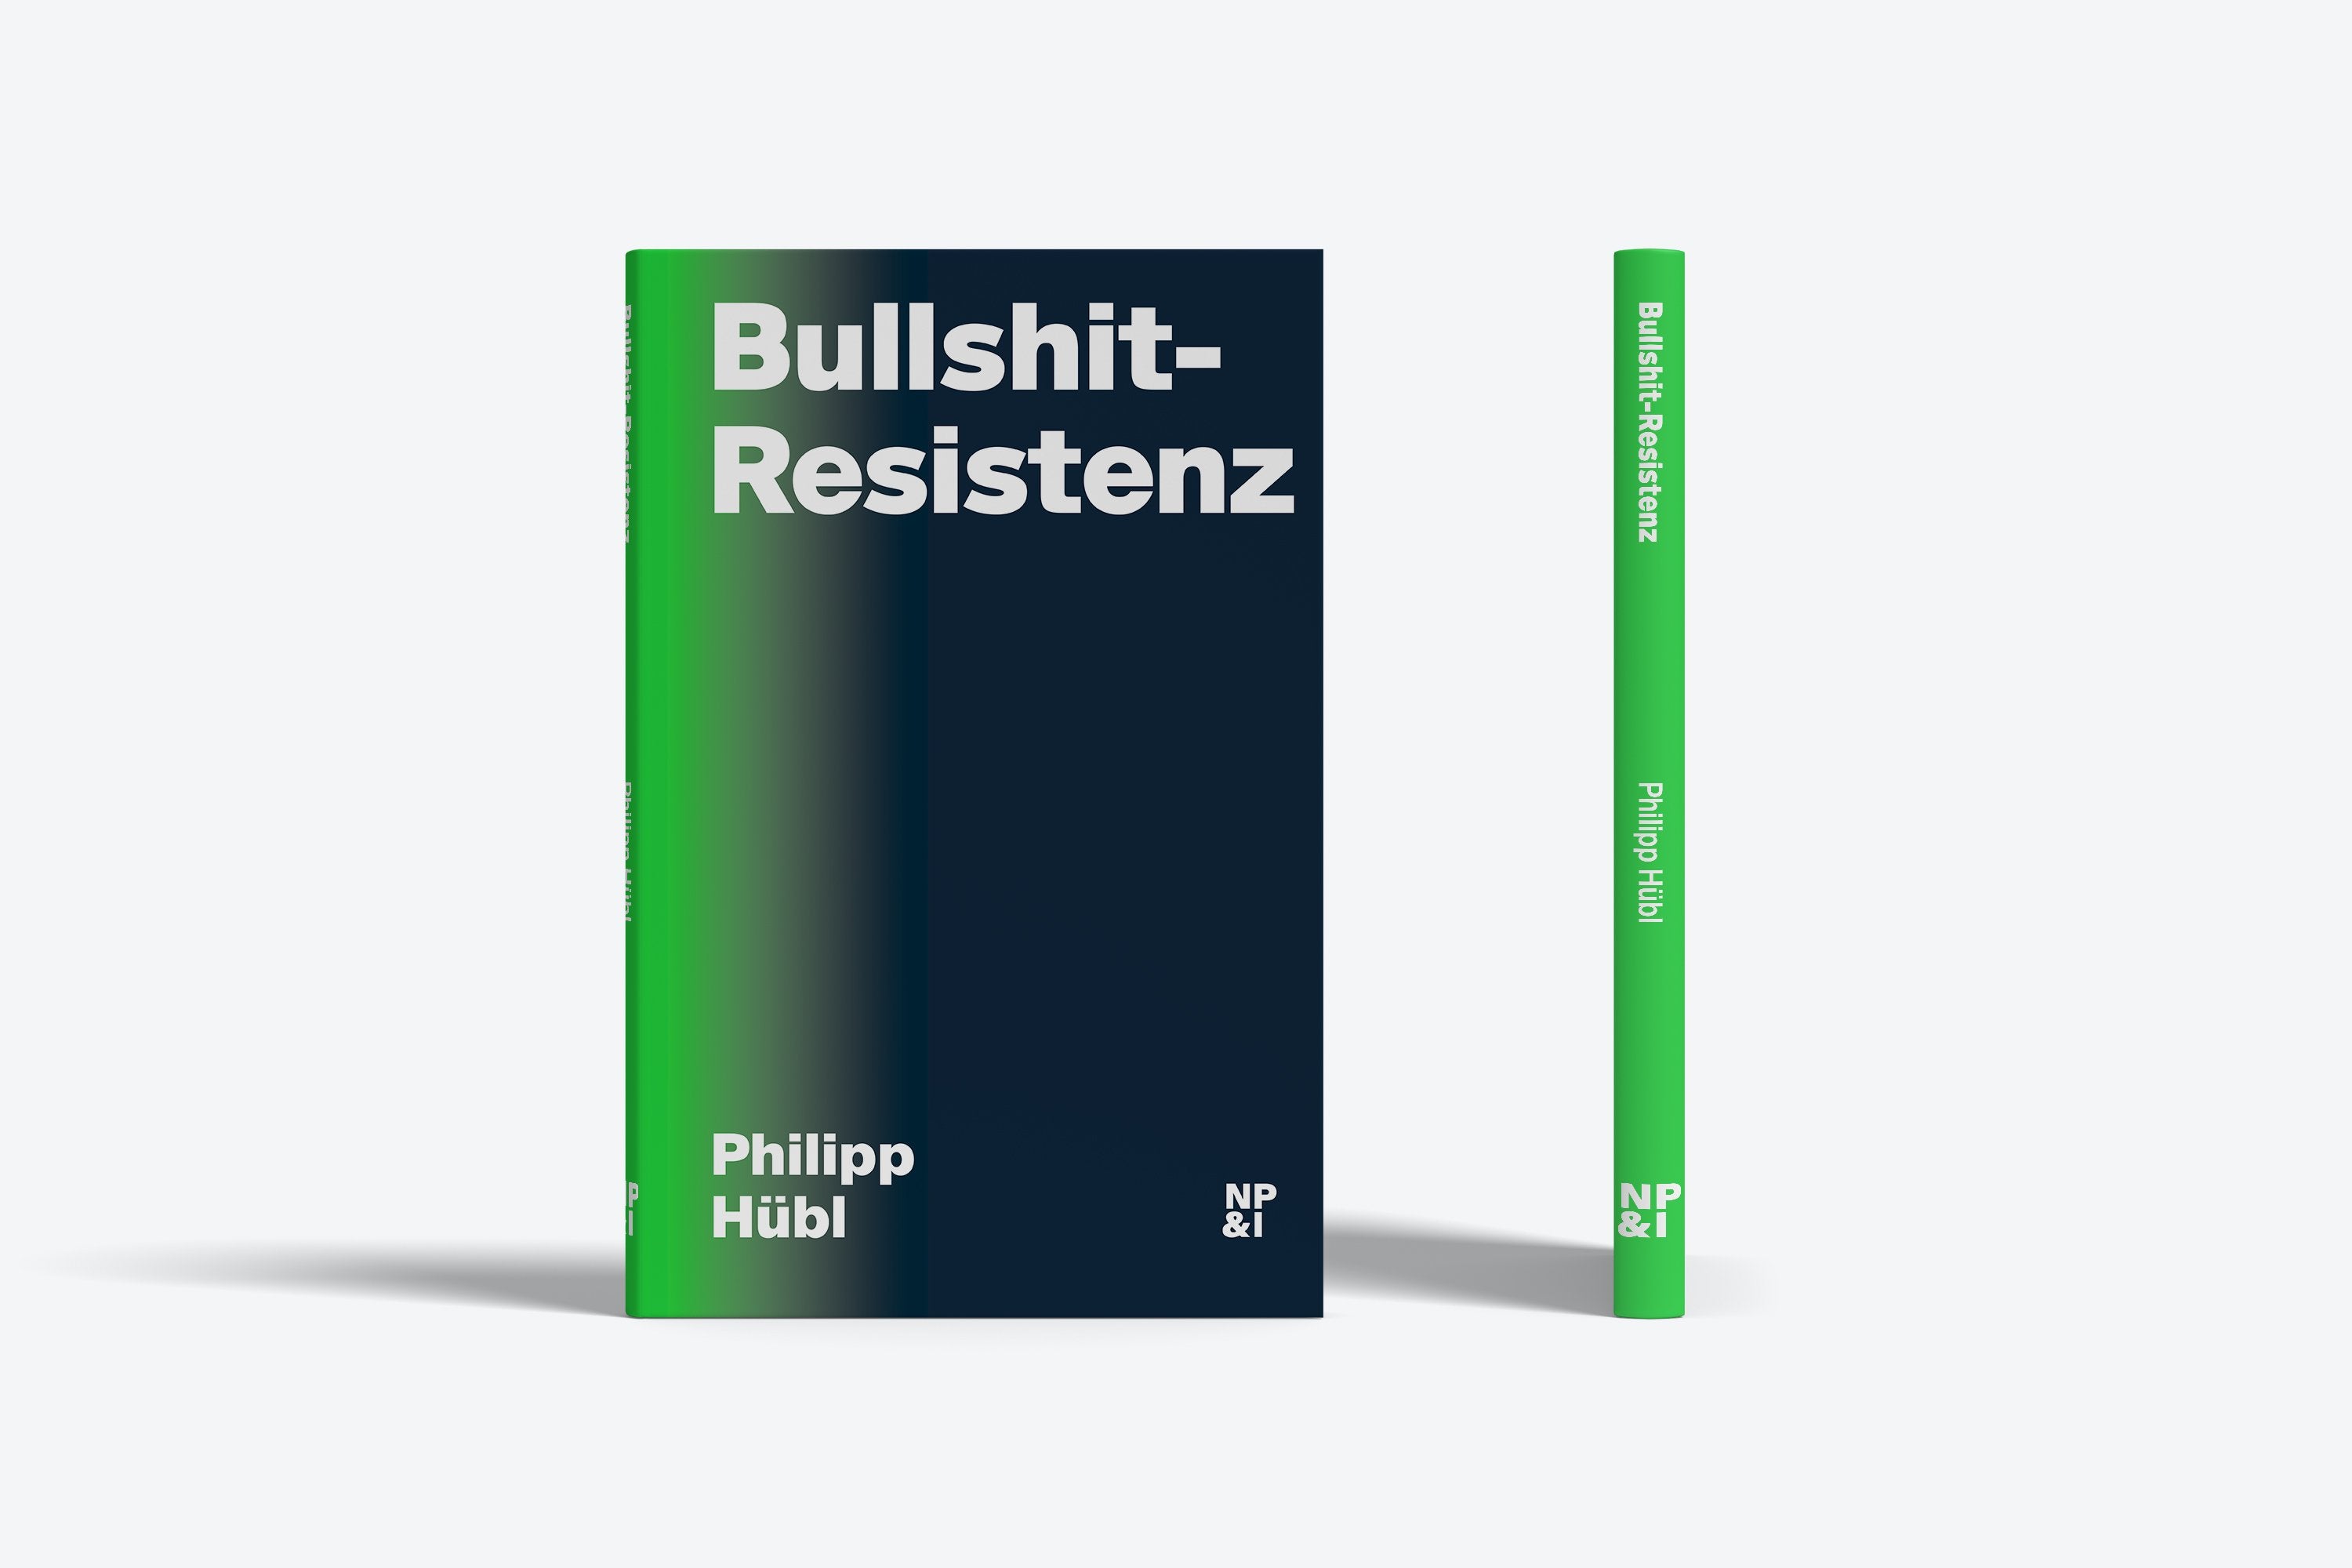 Bullshit-Resistenz